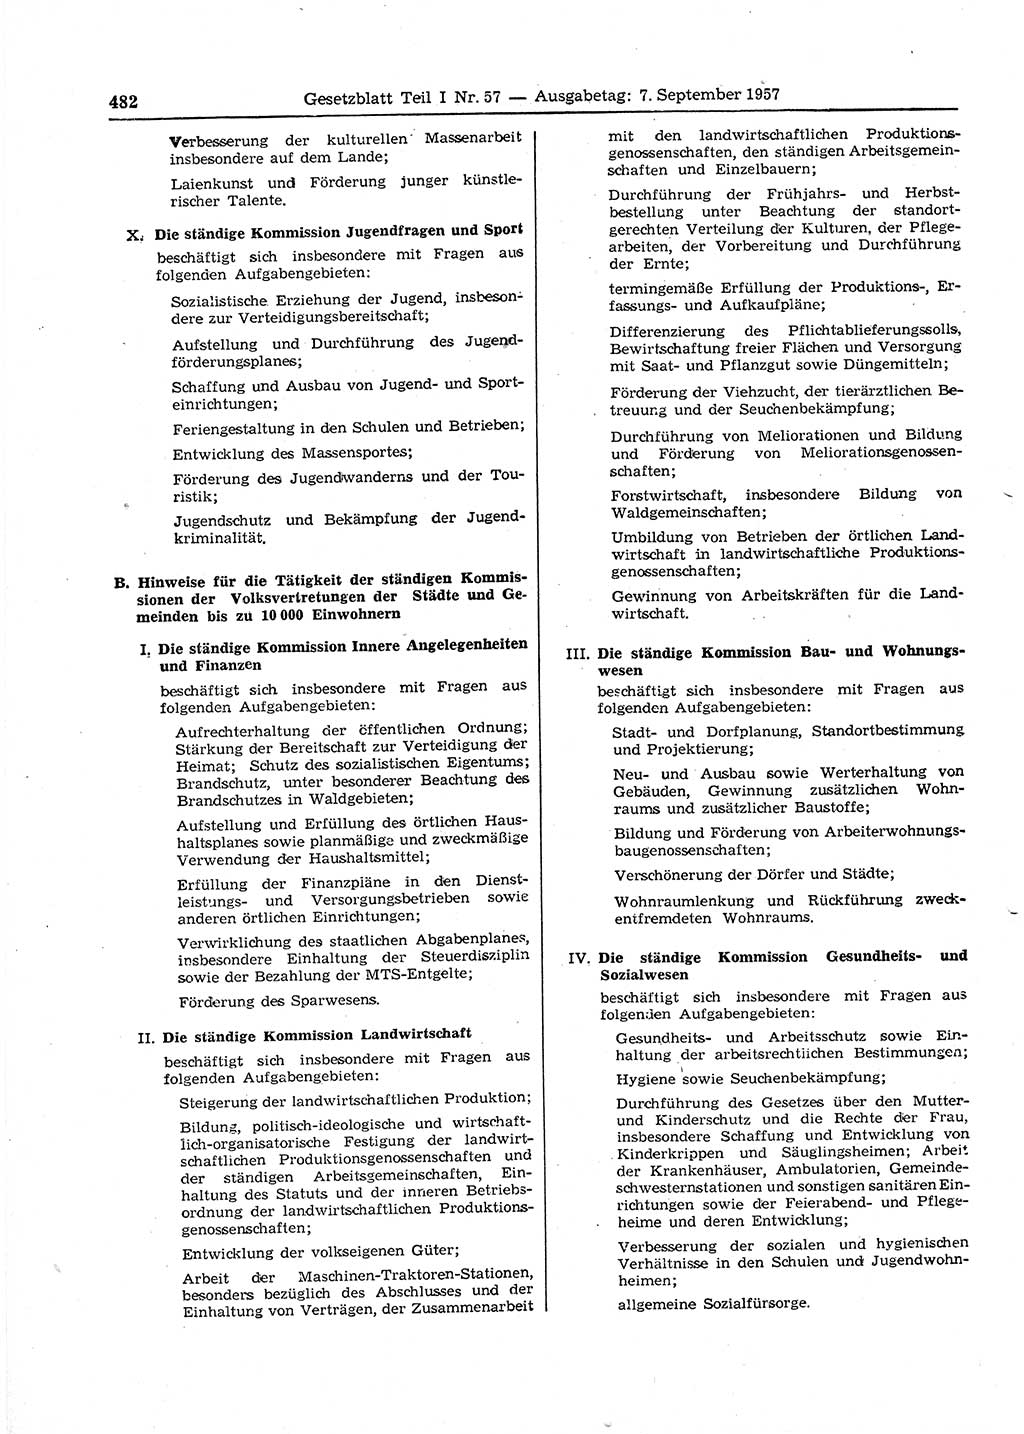 Gesetzblatt (GBl.) der Deutschen Demokratischen Republik (DDR) Teil Ⅰ 1957, Seite 482 (GBl. DDR Ⅰ 1957, S. 482)